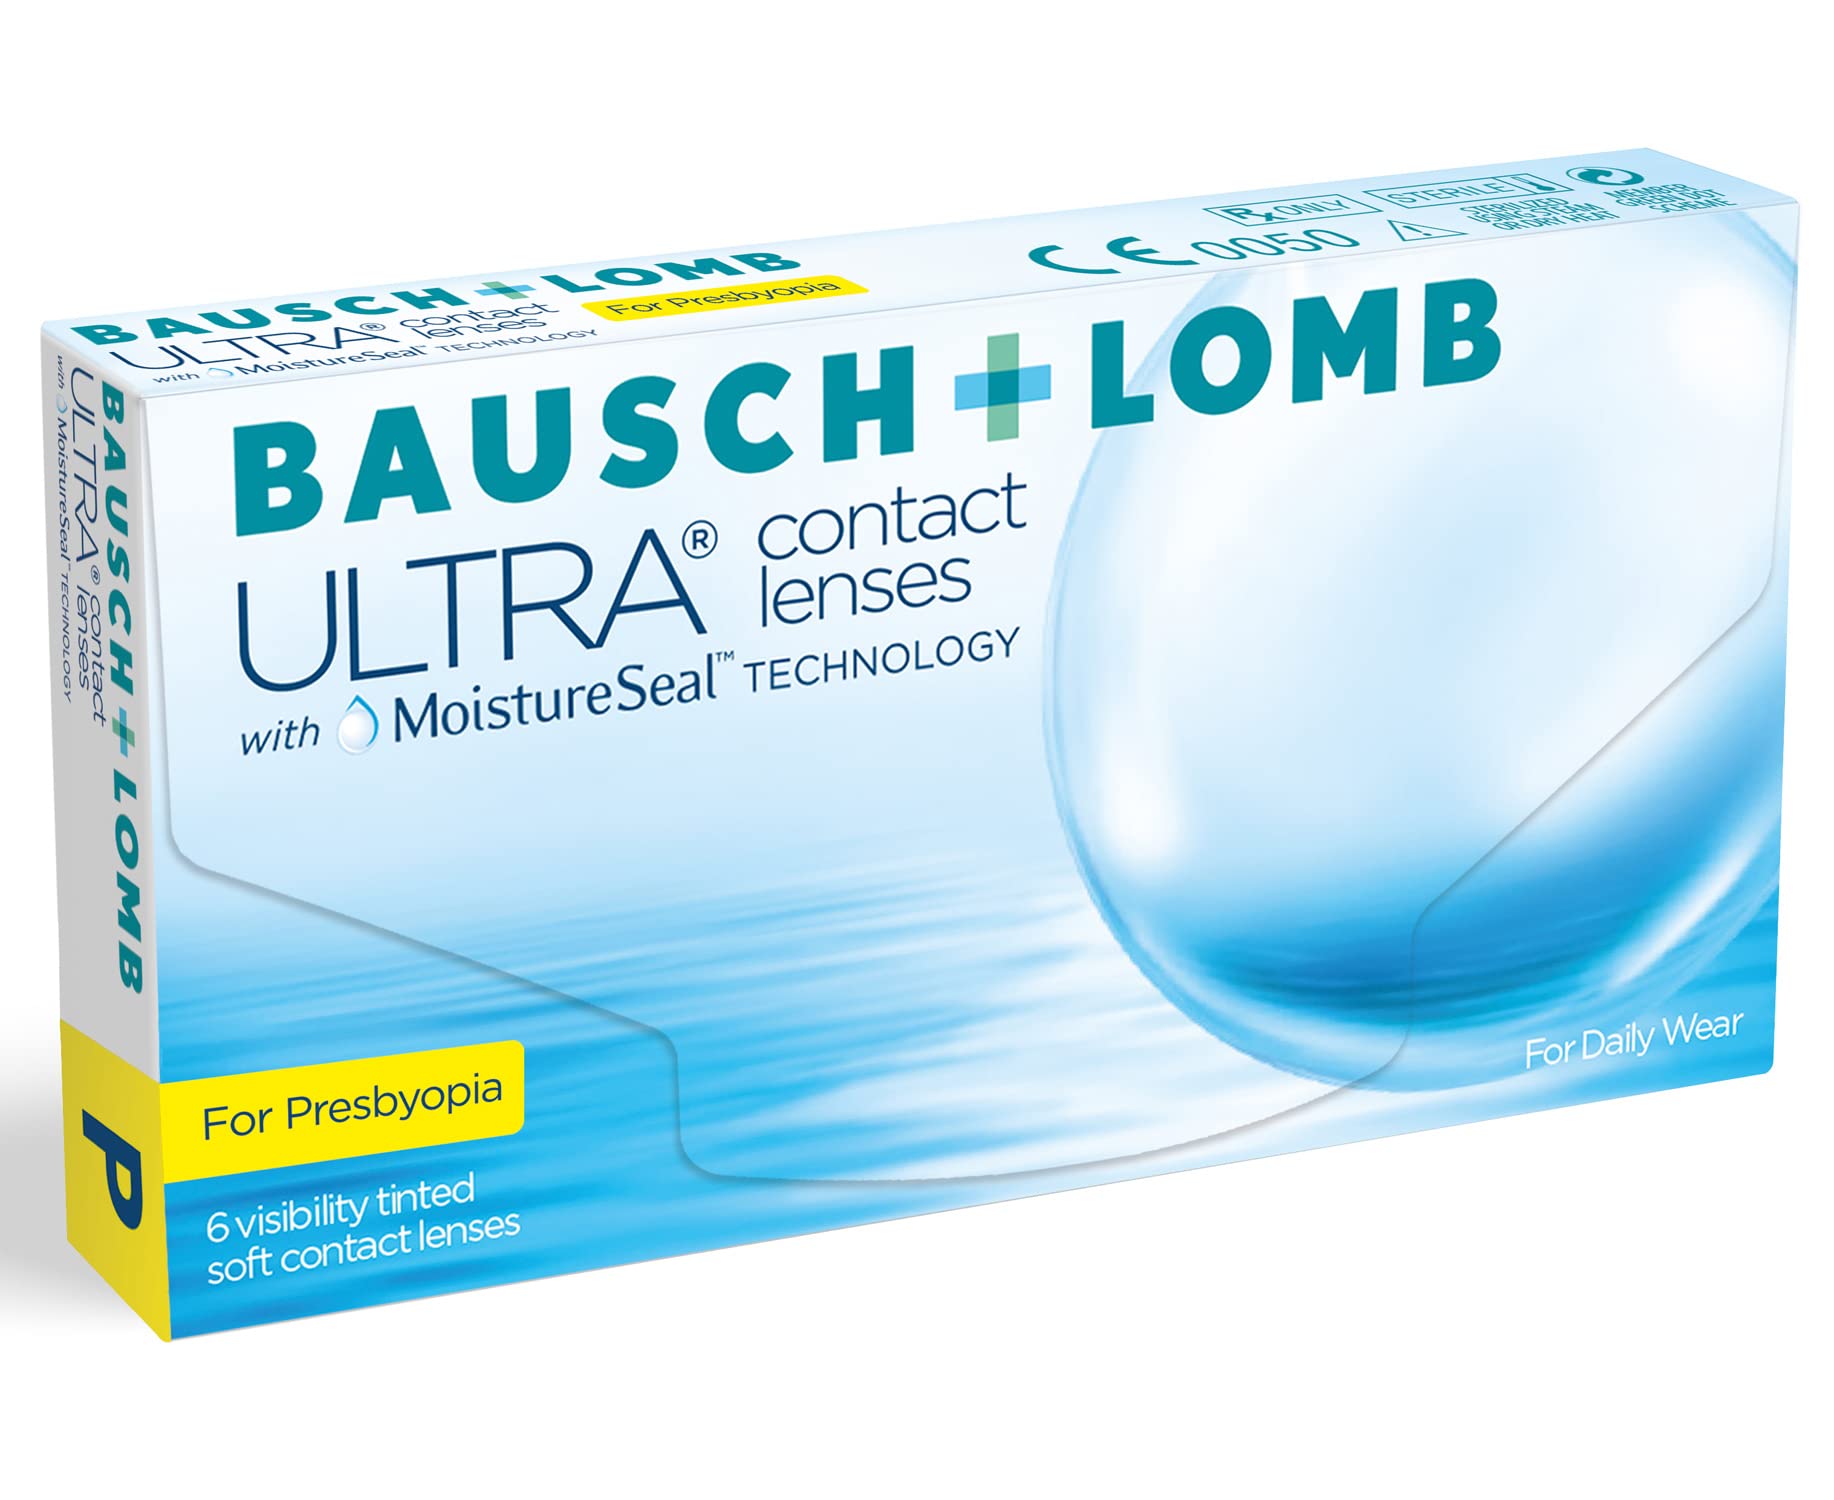 Bausch und Lomb Ultra for Presbyopia, Premium Monatslinsen, Gleitsicht-Kontaktlinsen weich, 6 Stück BC 8.5 mm / DIA 14.2 / 1.25 Dioptrien / ADD Low